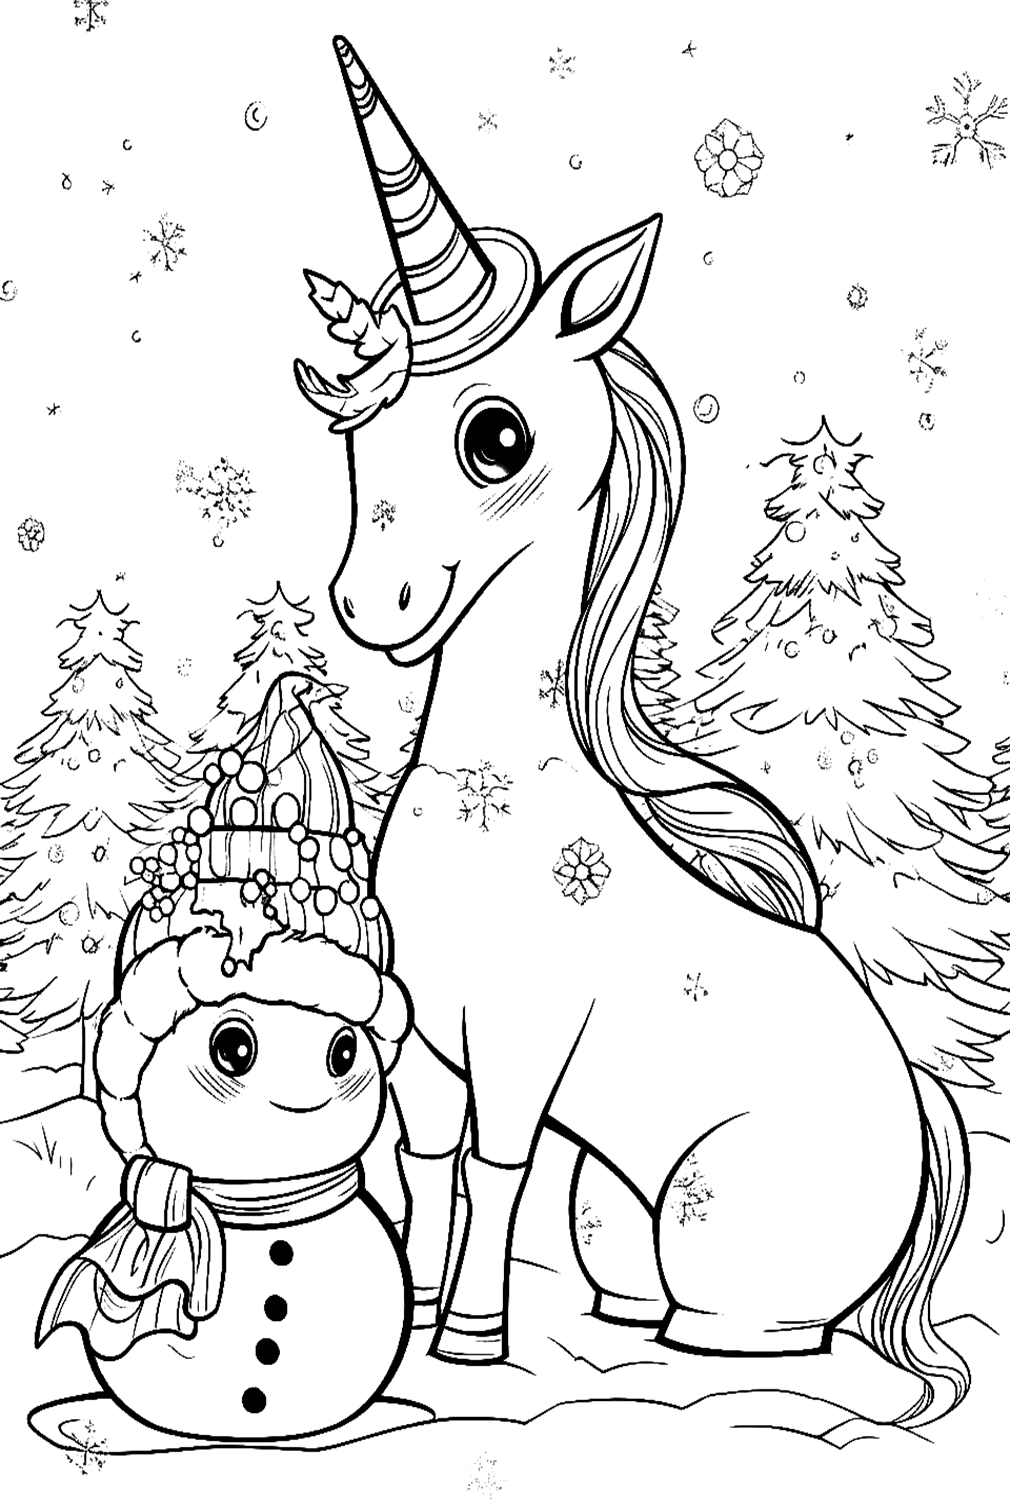 Página para colorear de muñeco de nieve y unicornio de Snowman